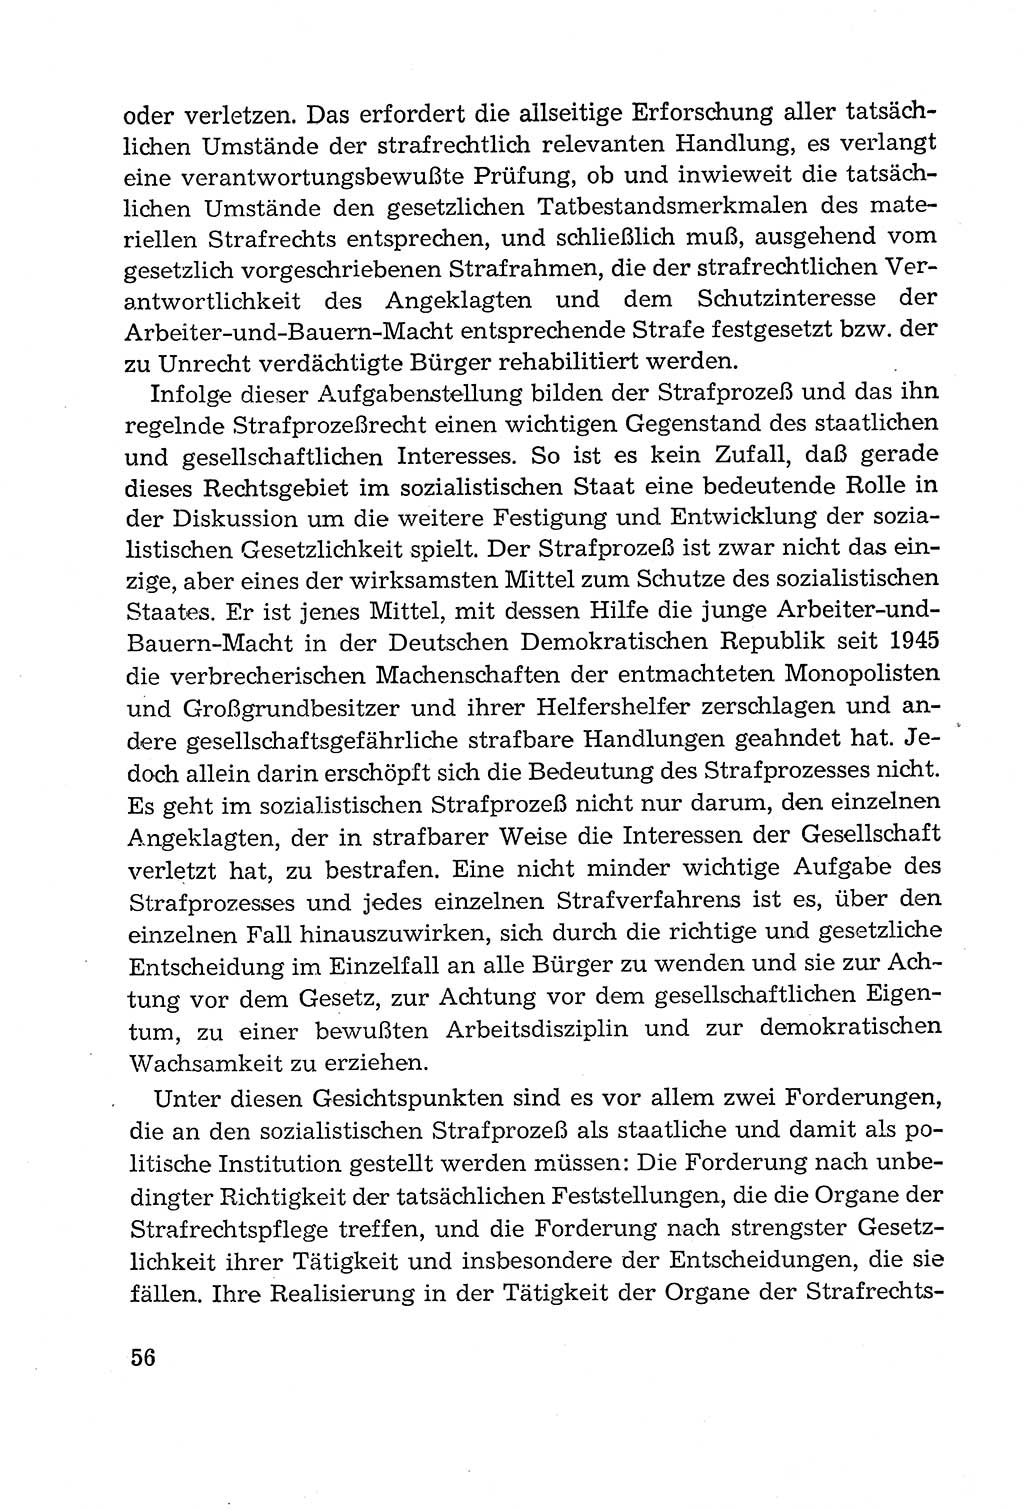 Leitfaden des Strafprozeßrechts der Deutschen Demokratischen Republik (DDR) 1959, Seite 56 (LF StPR DDR 1959, S. 56)